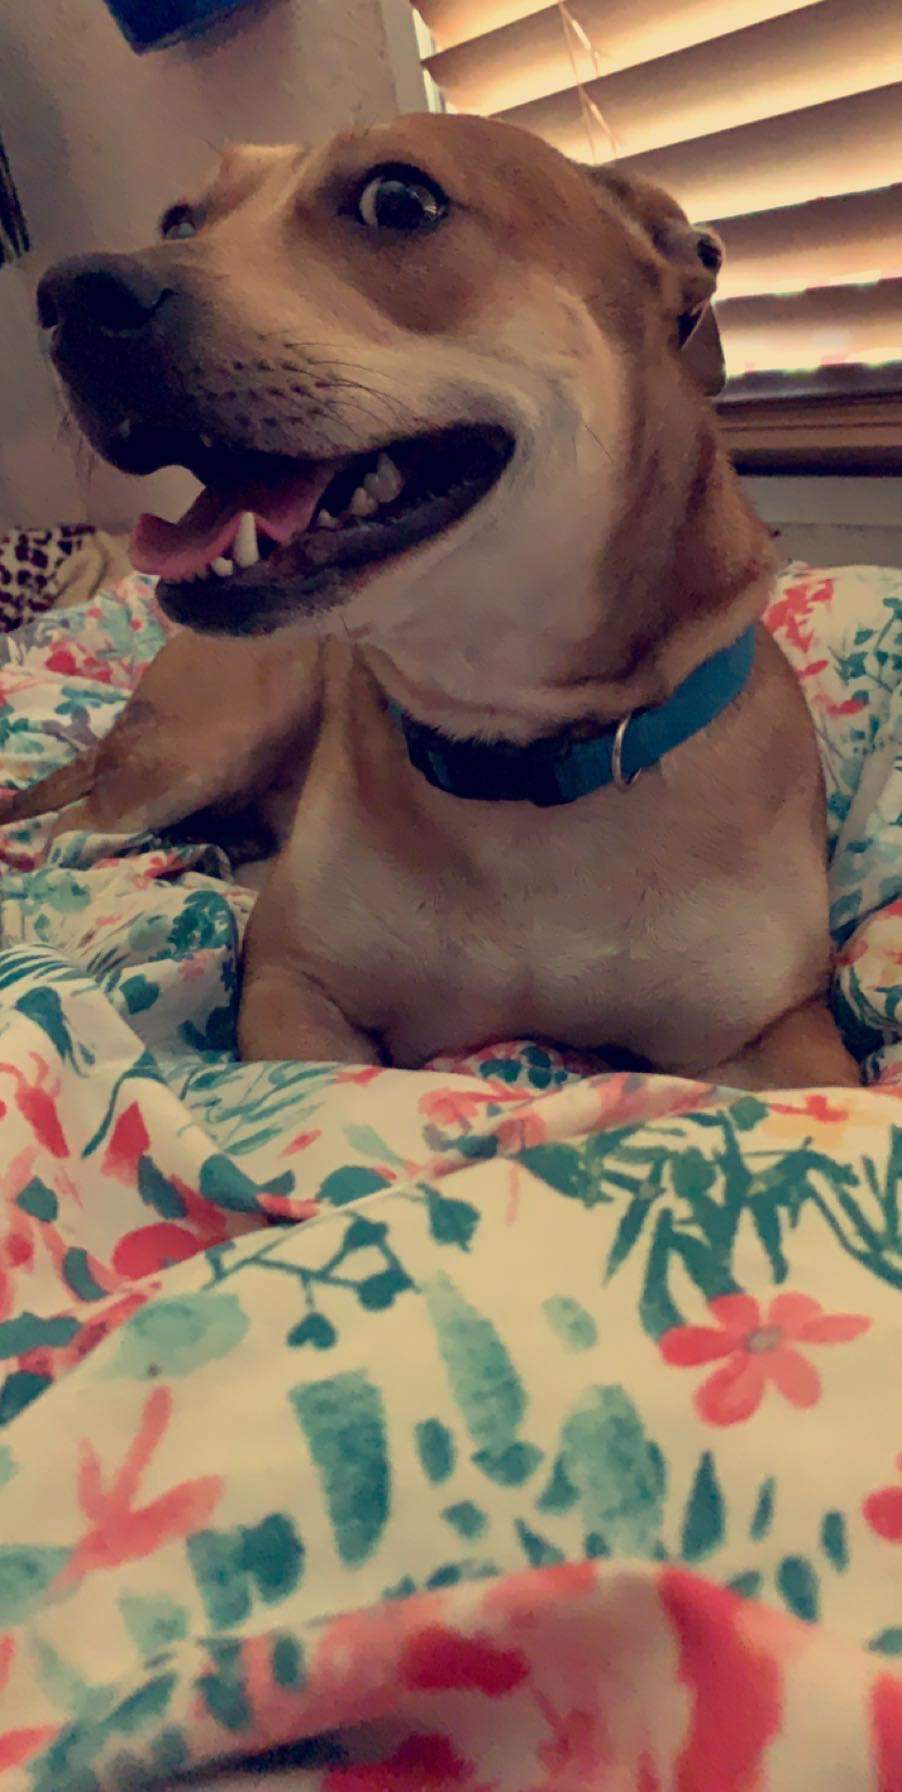 adoptable Dog in Santa Fe,TX named Koda